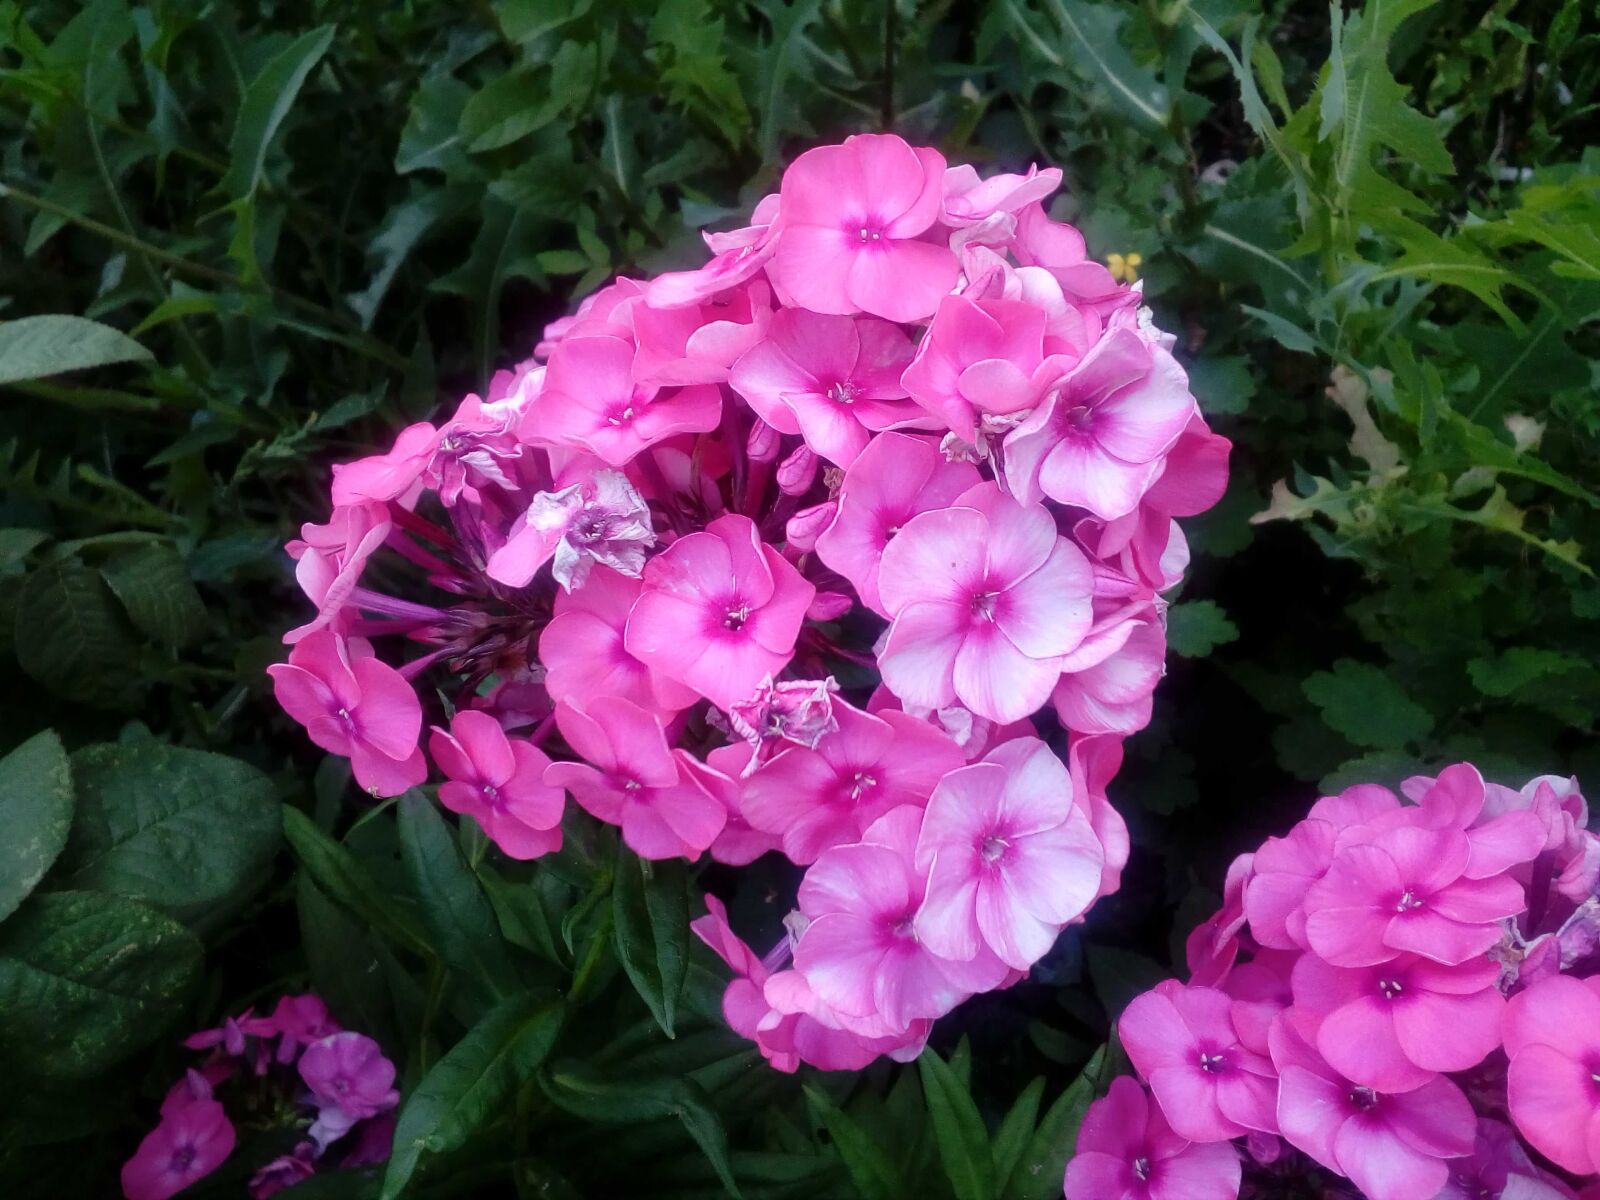 ZTE BLADE A510 sample photo. Flower garden, pinkish, bouquet photography